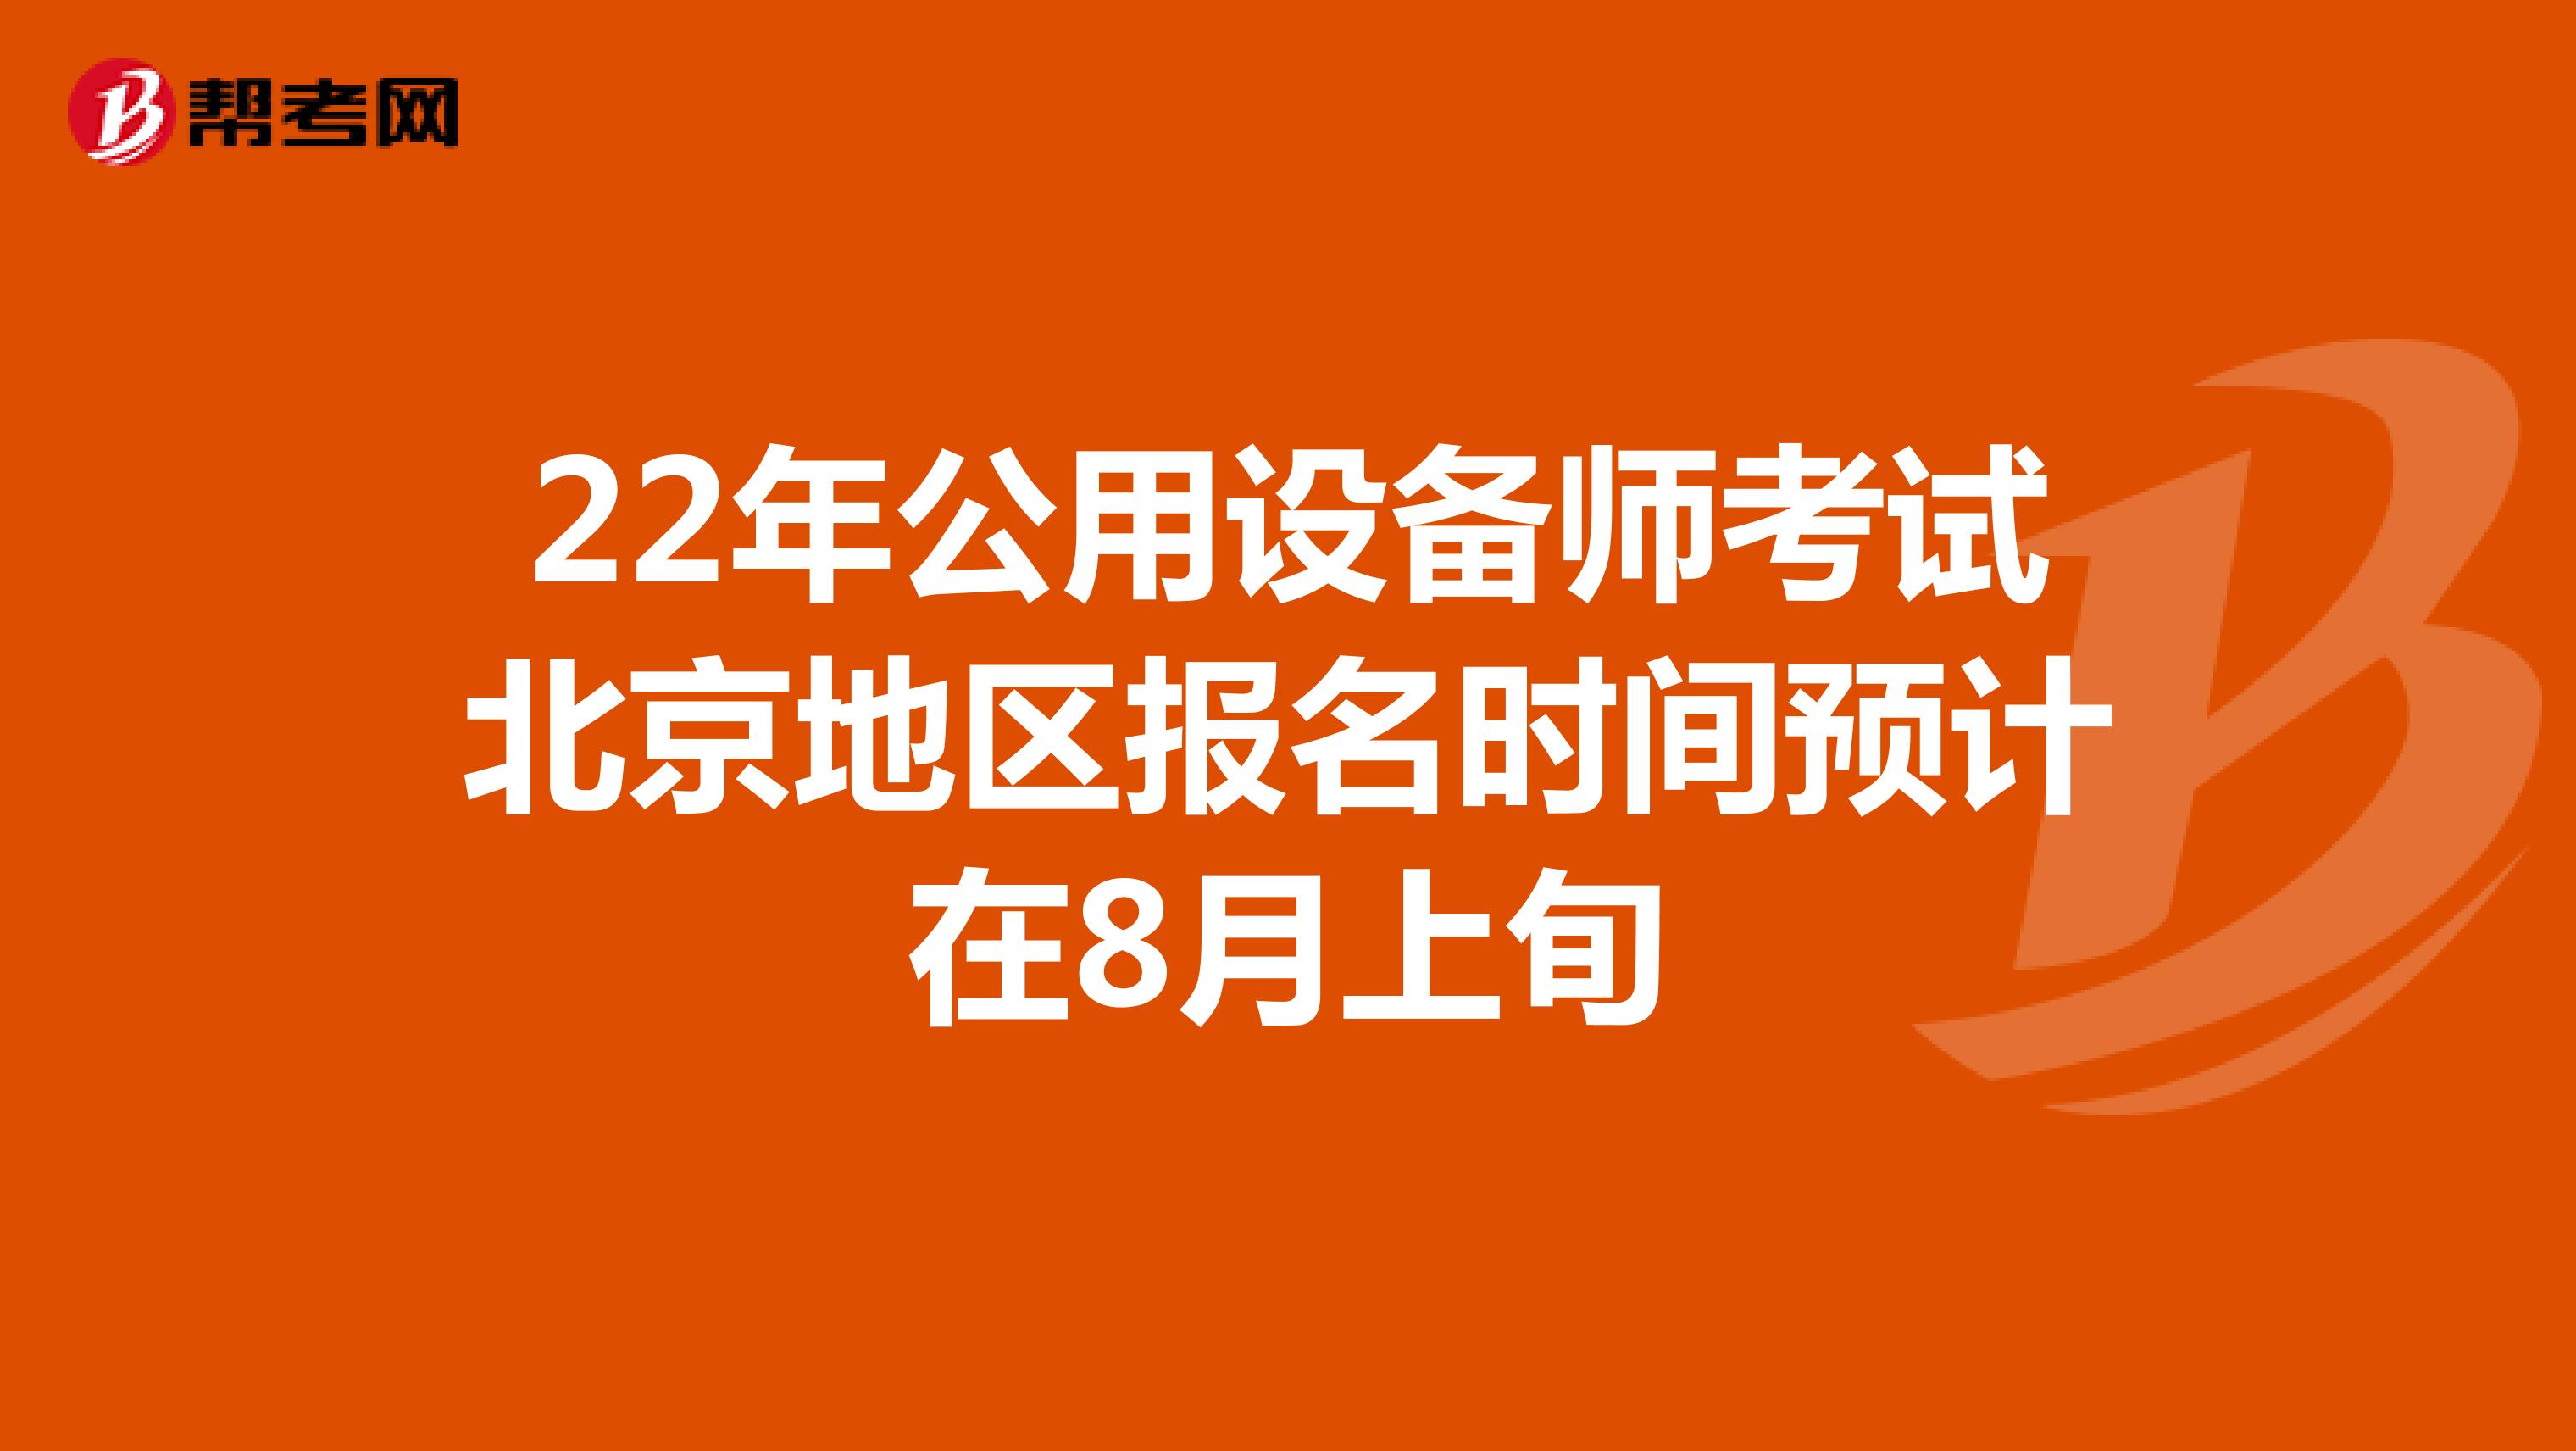 22年公用设备师考试北京地区报名时间预计在8月上旬